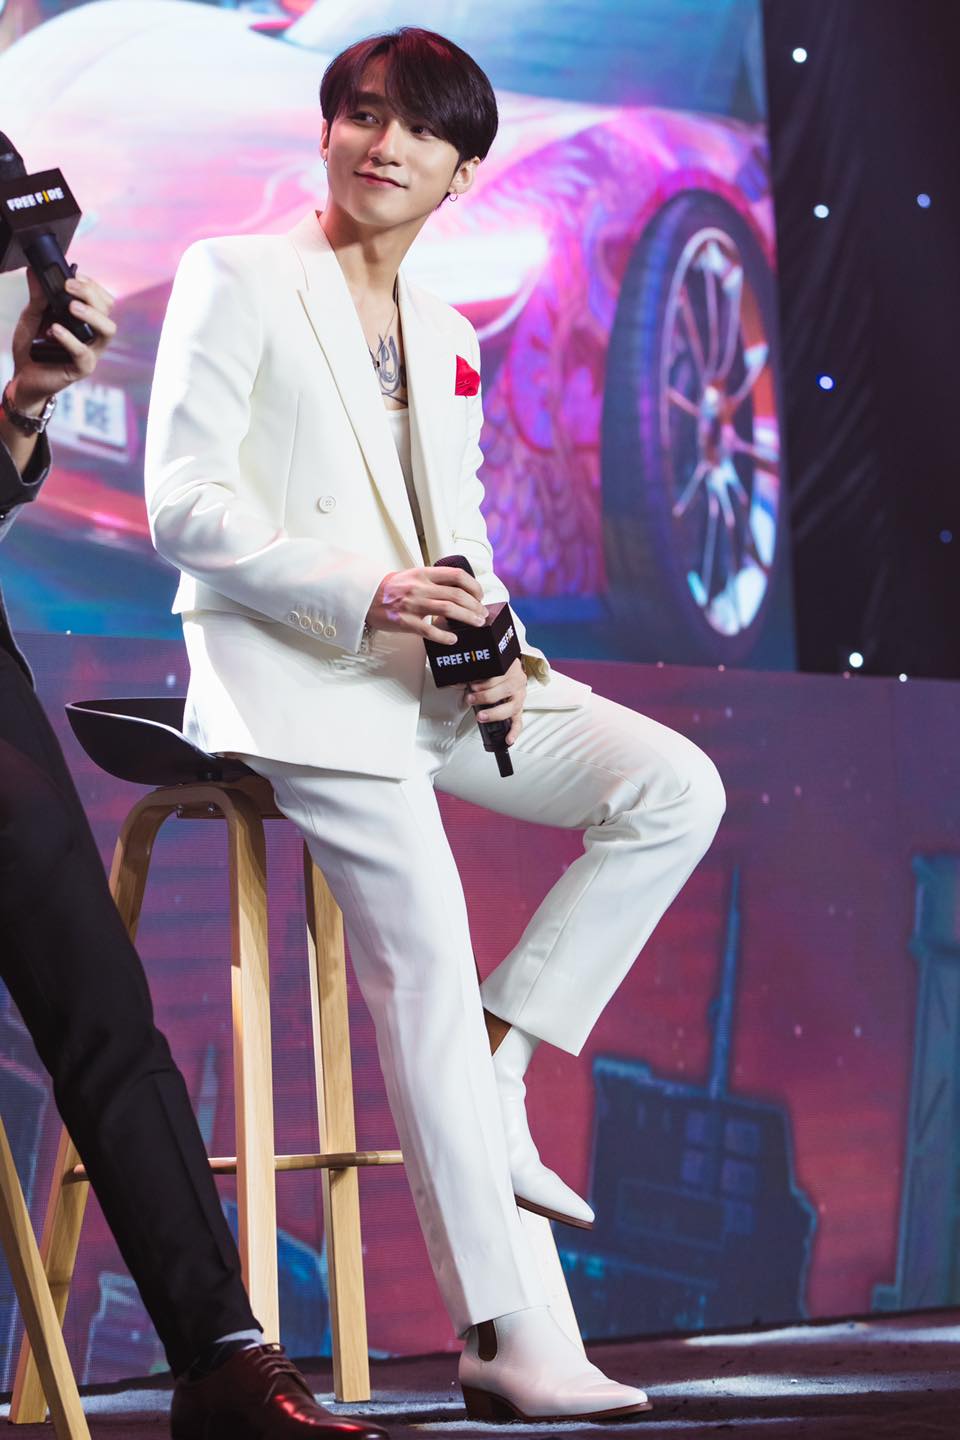 Anh chọn một bộ suit trắng đến từ thương hiệu Saint Laurent ra mắt vào năm 2019. Thiết kế này hiện tại đã hết và chỉ có thể được mua lại trên những website bán lẻ